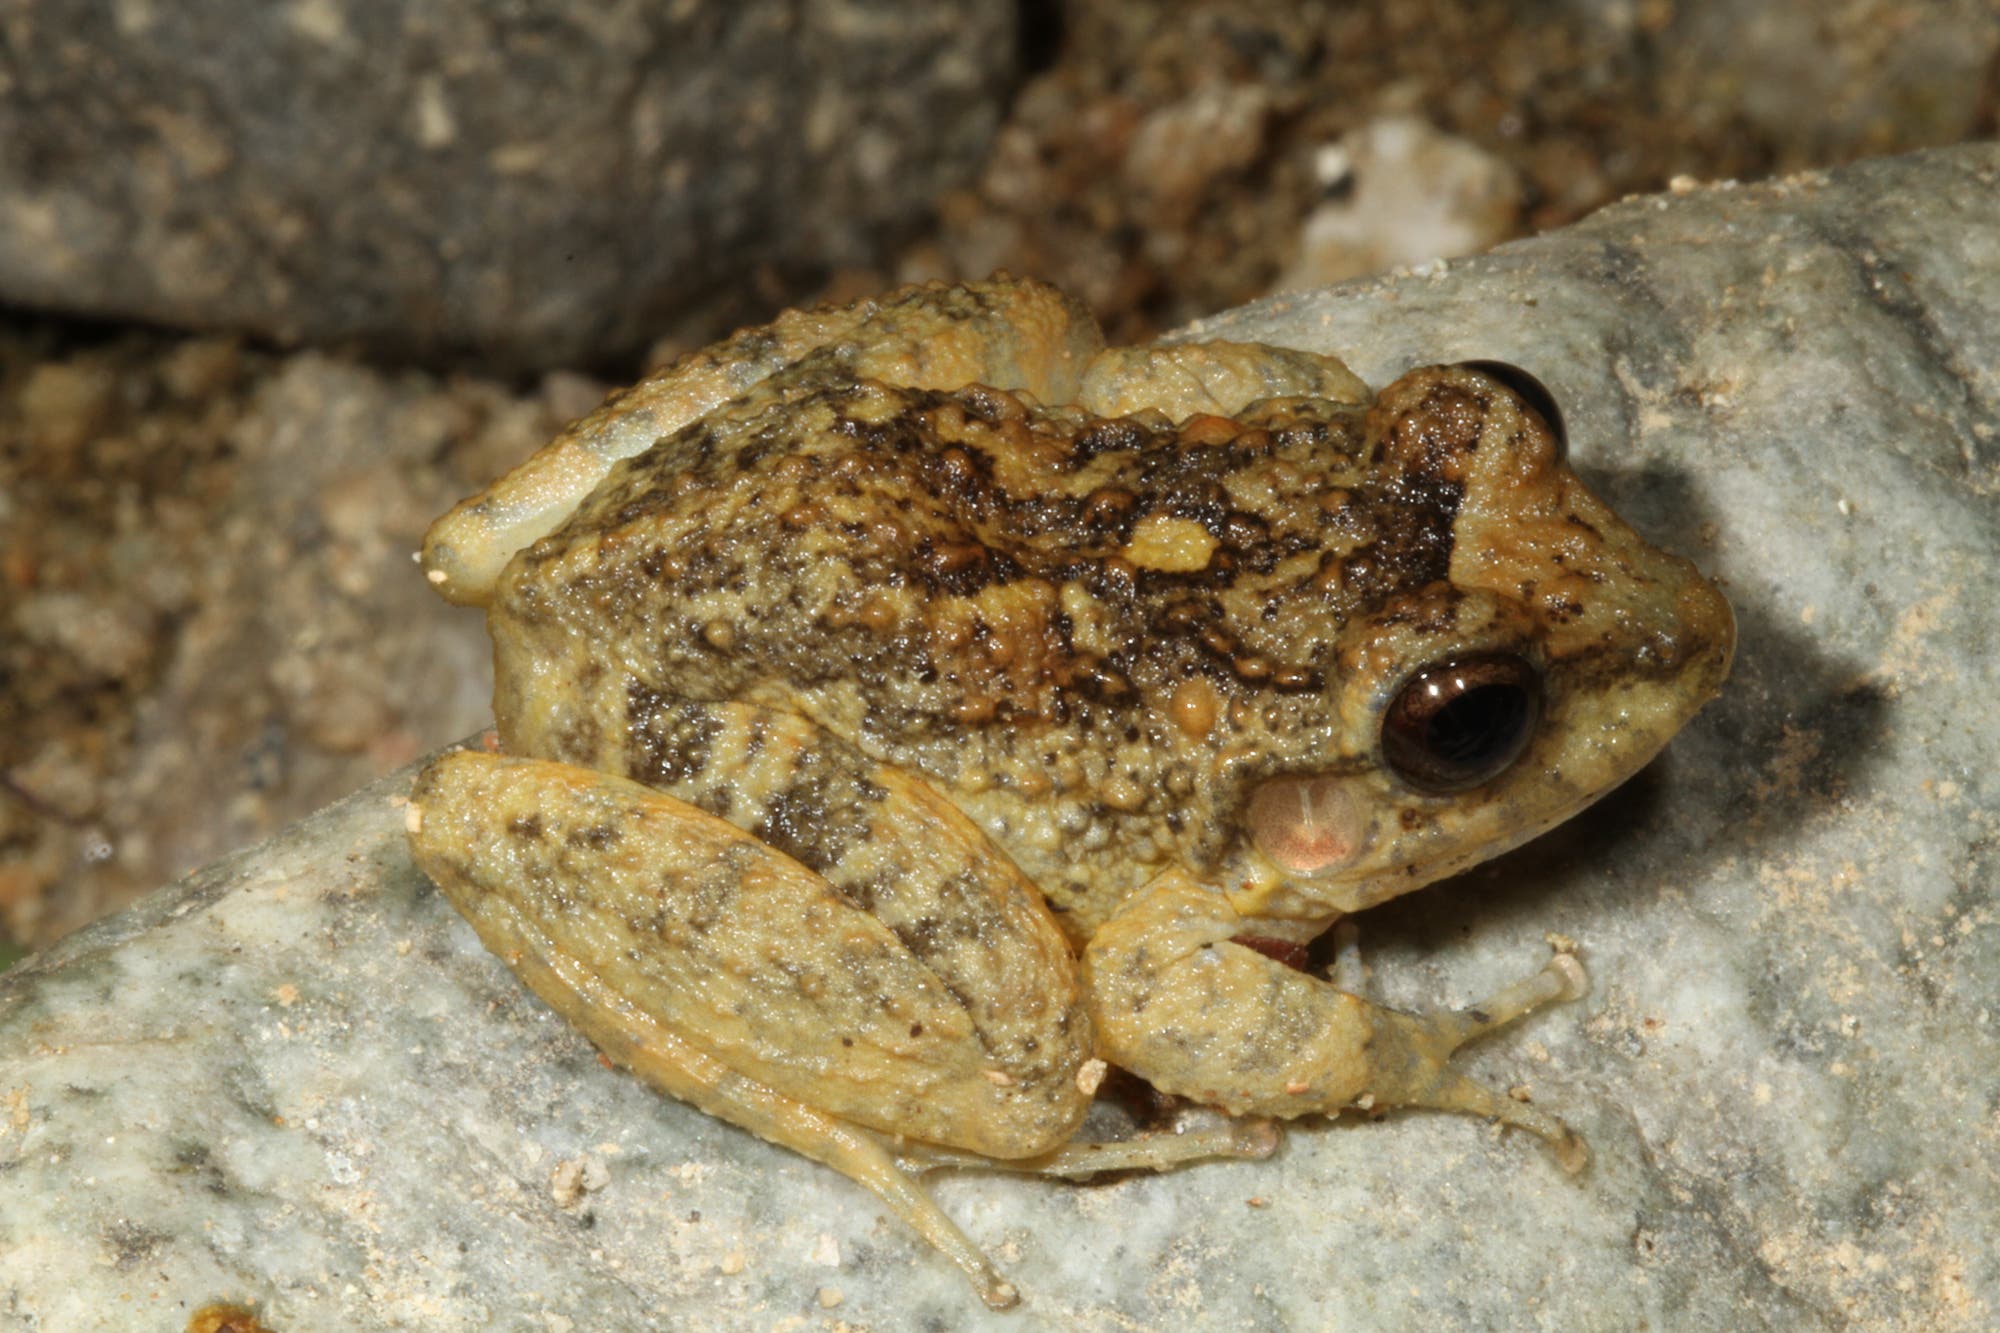 Craugastor rugulosus wurde vom Chytridpilz stark dezimiert. Die Zerstörung seines Lebensraums bedroht den Frosch zusätzlich.